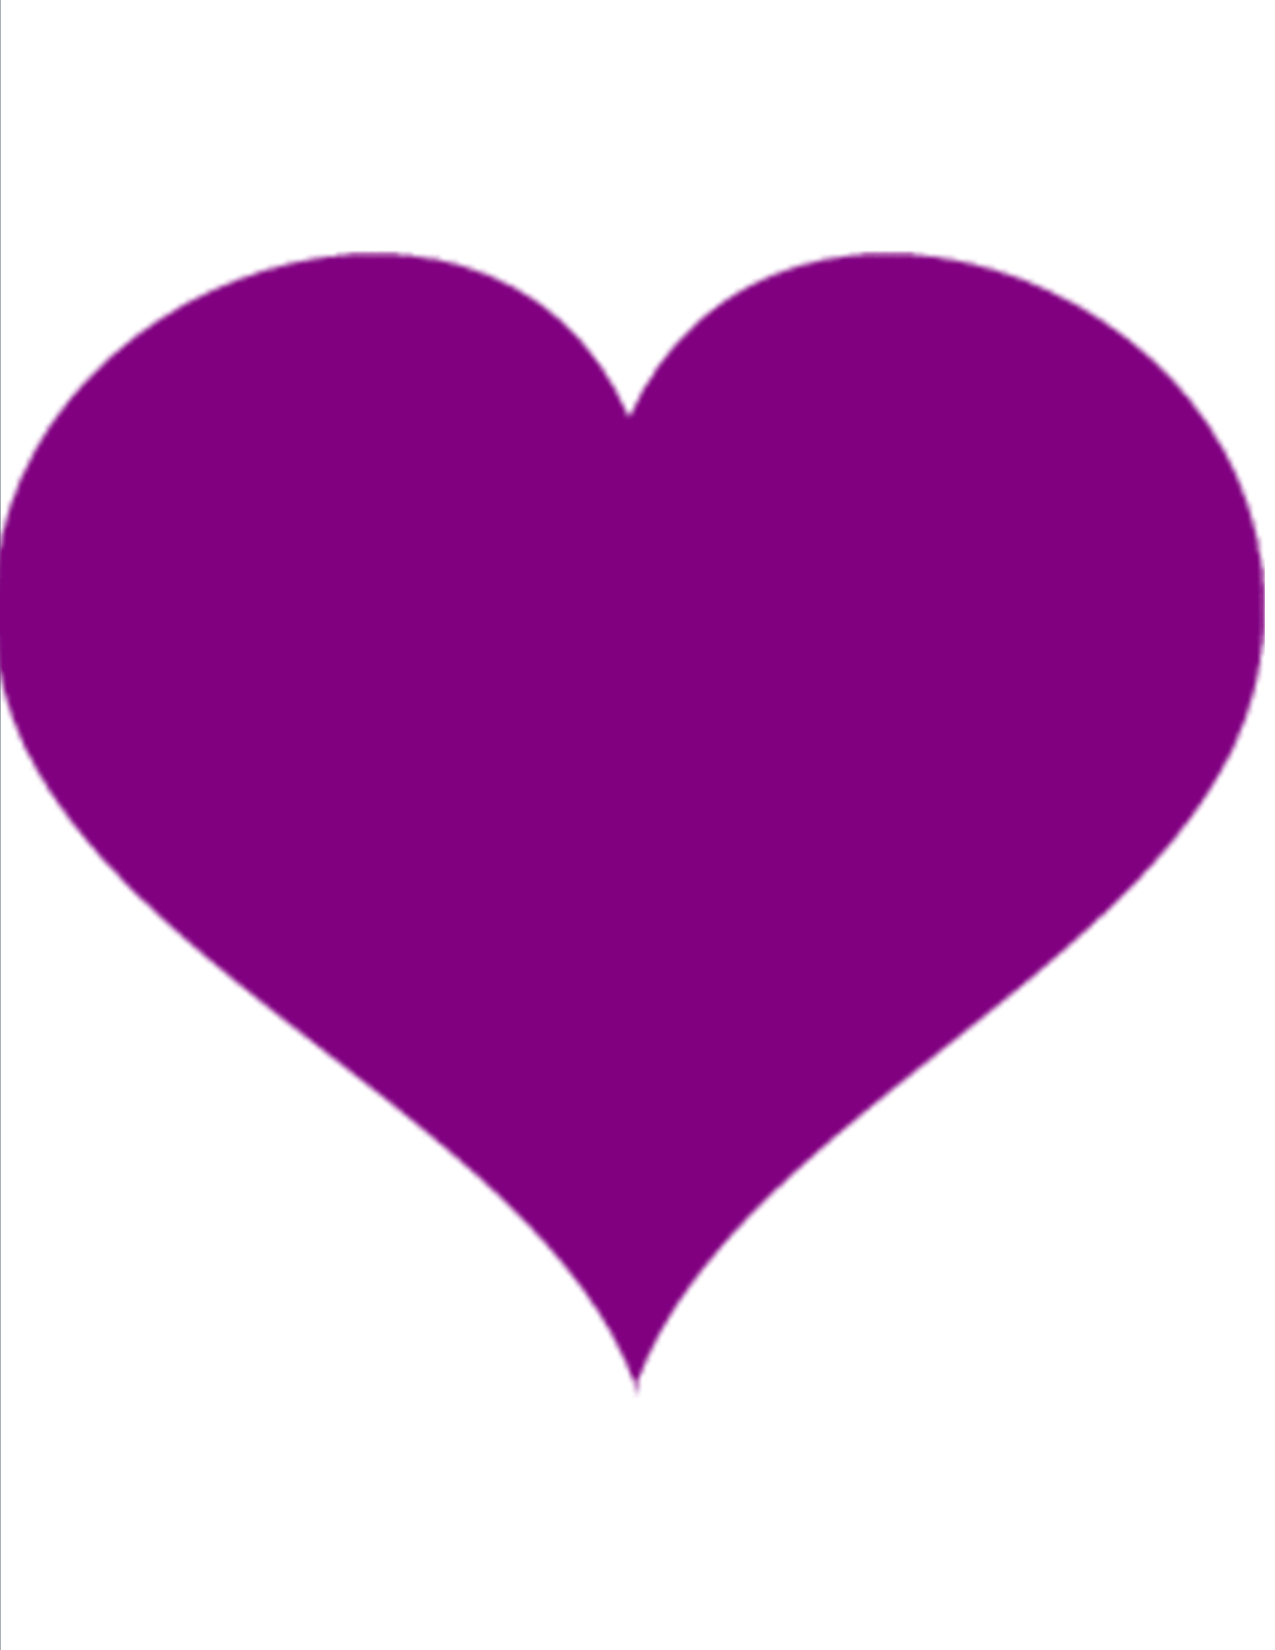 purple heart 2 clip art